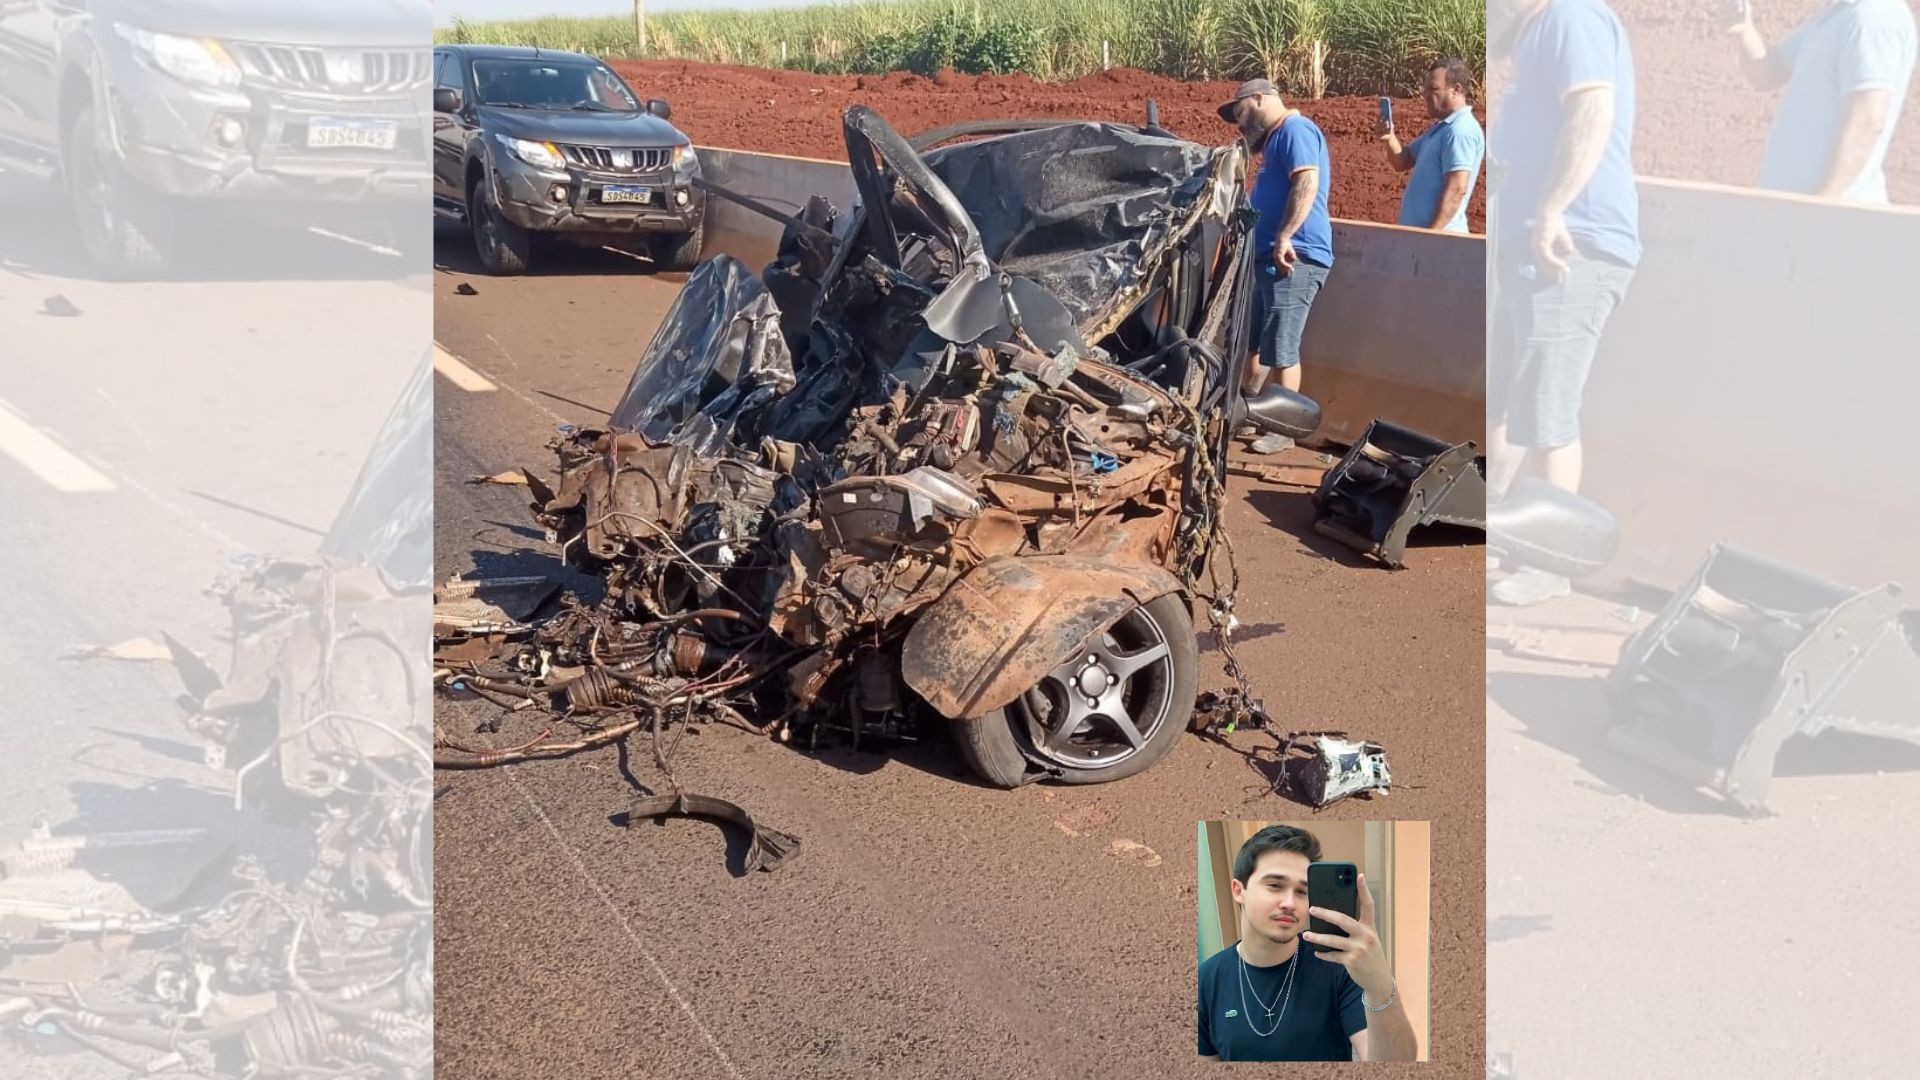 Jovem morre após bater contra carreta e caminhonete em rodovia do interior de SP; carro ficou destruído